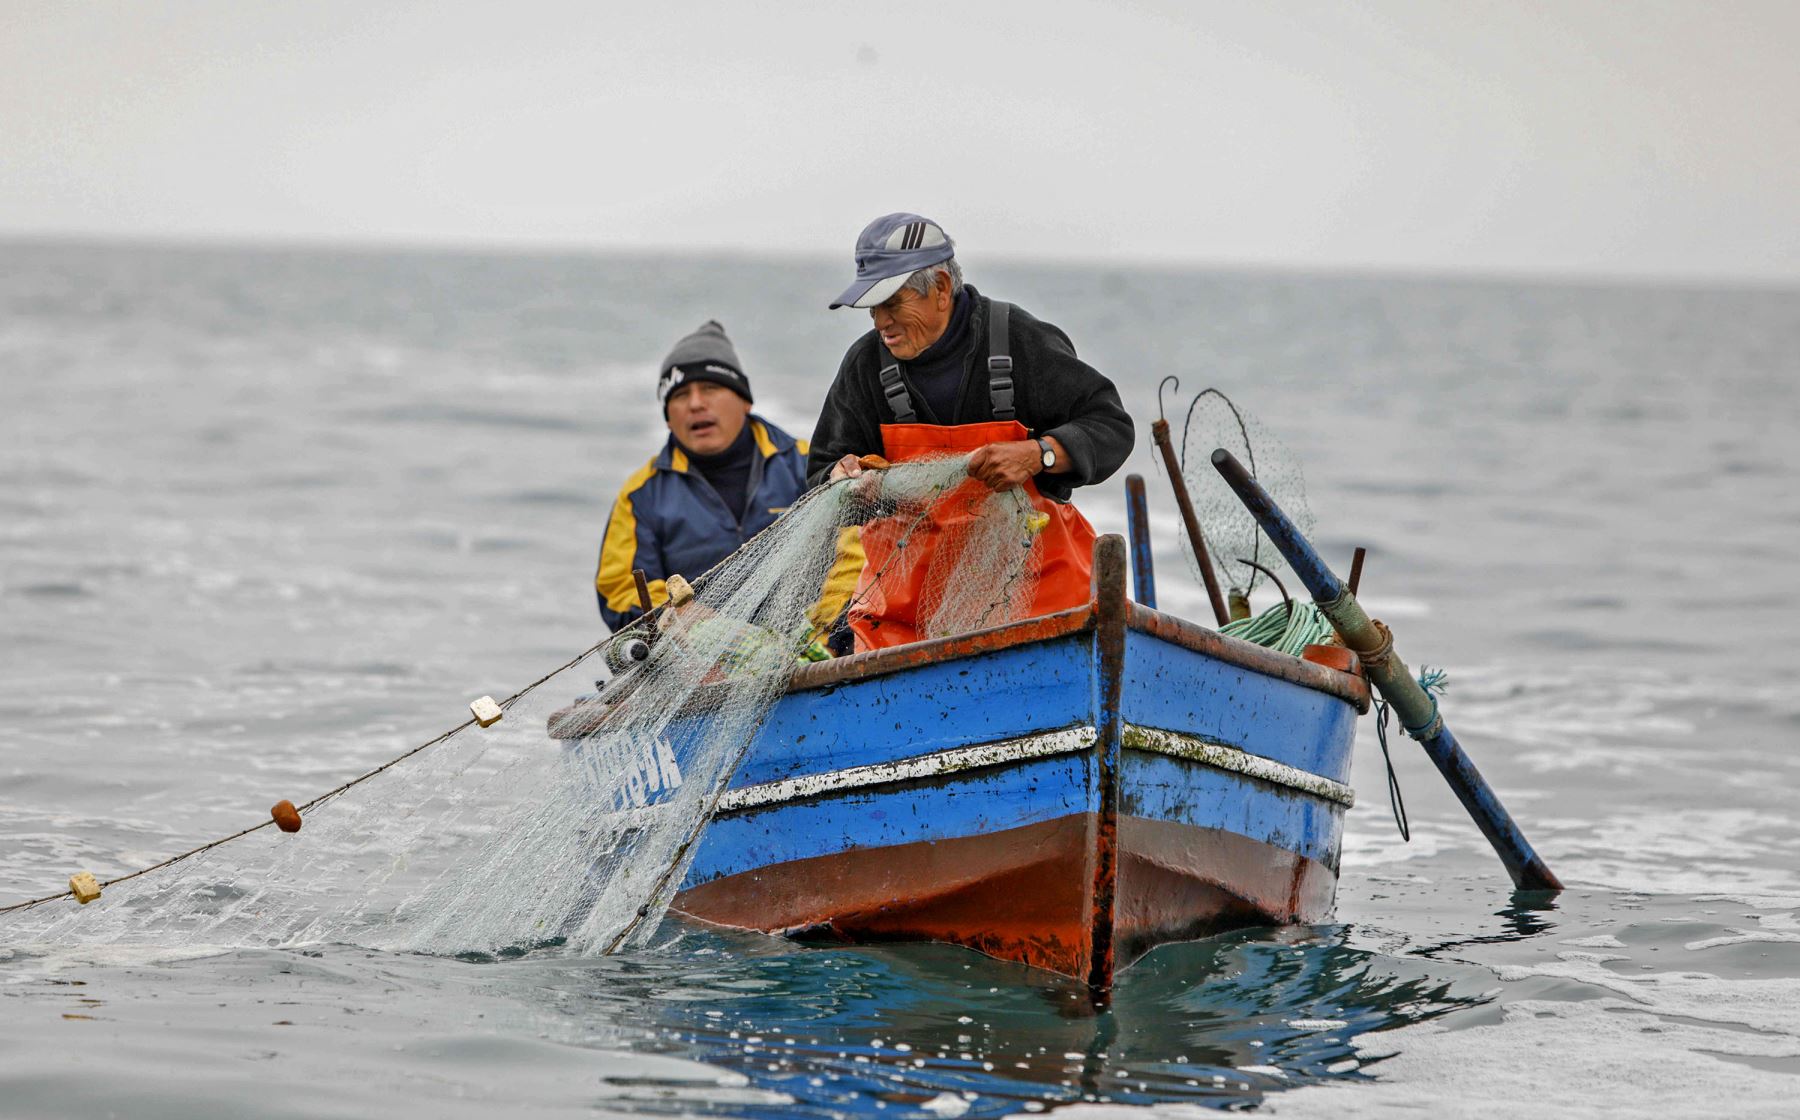 Pescador artesanal en plena faena. Foto: Cortesía Ministerio de la Producción.